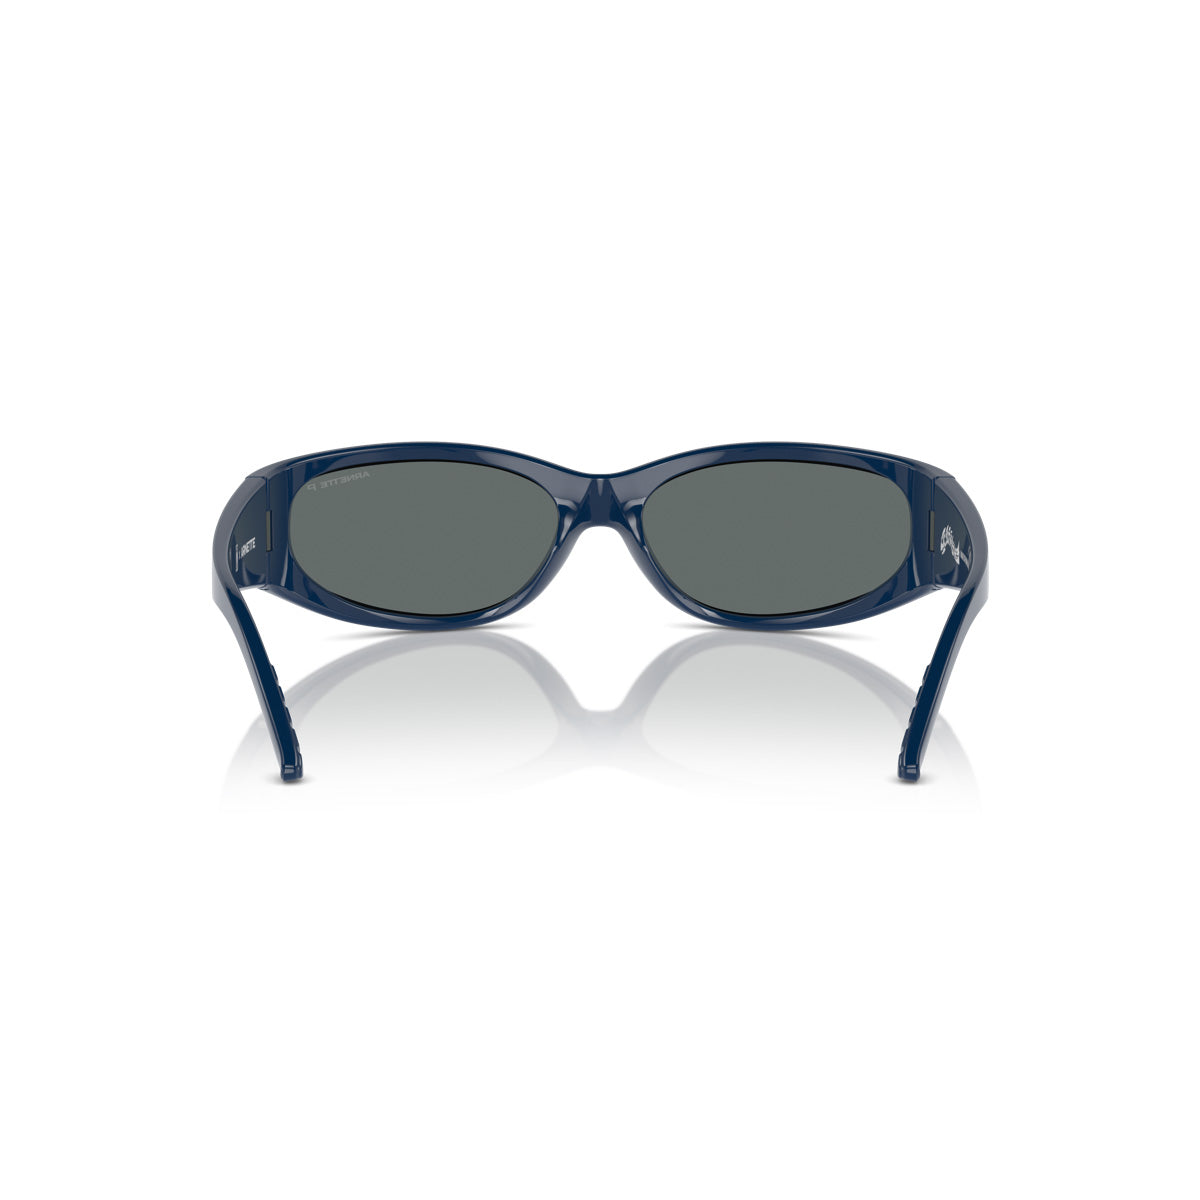 Girl X Arnette Catfish Sunglasses